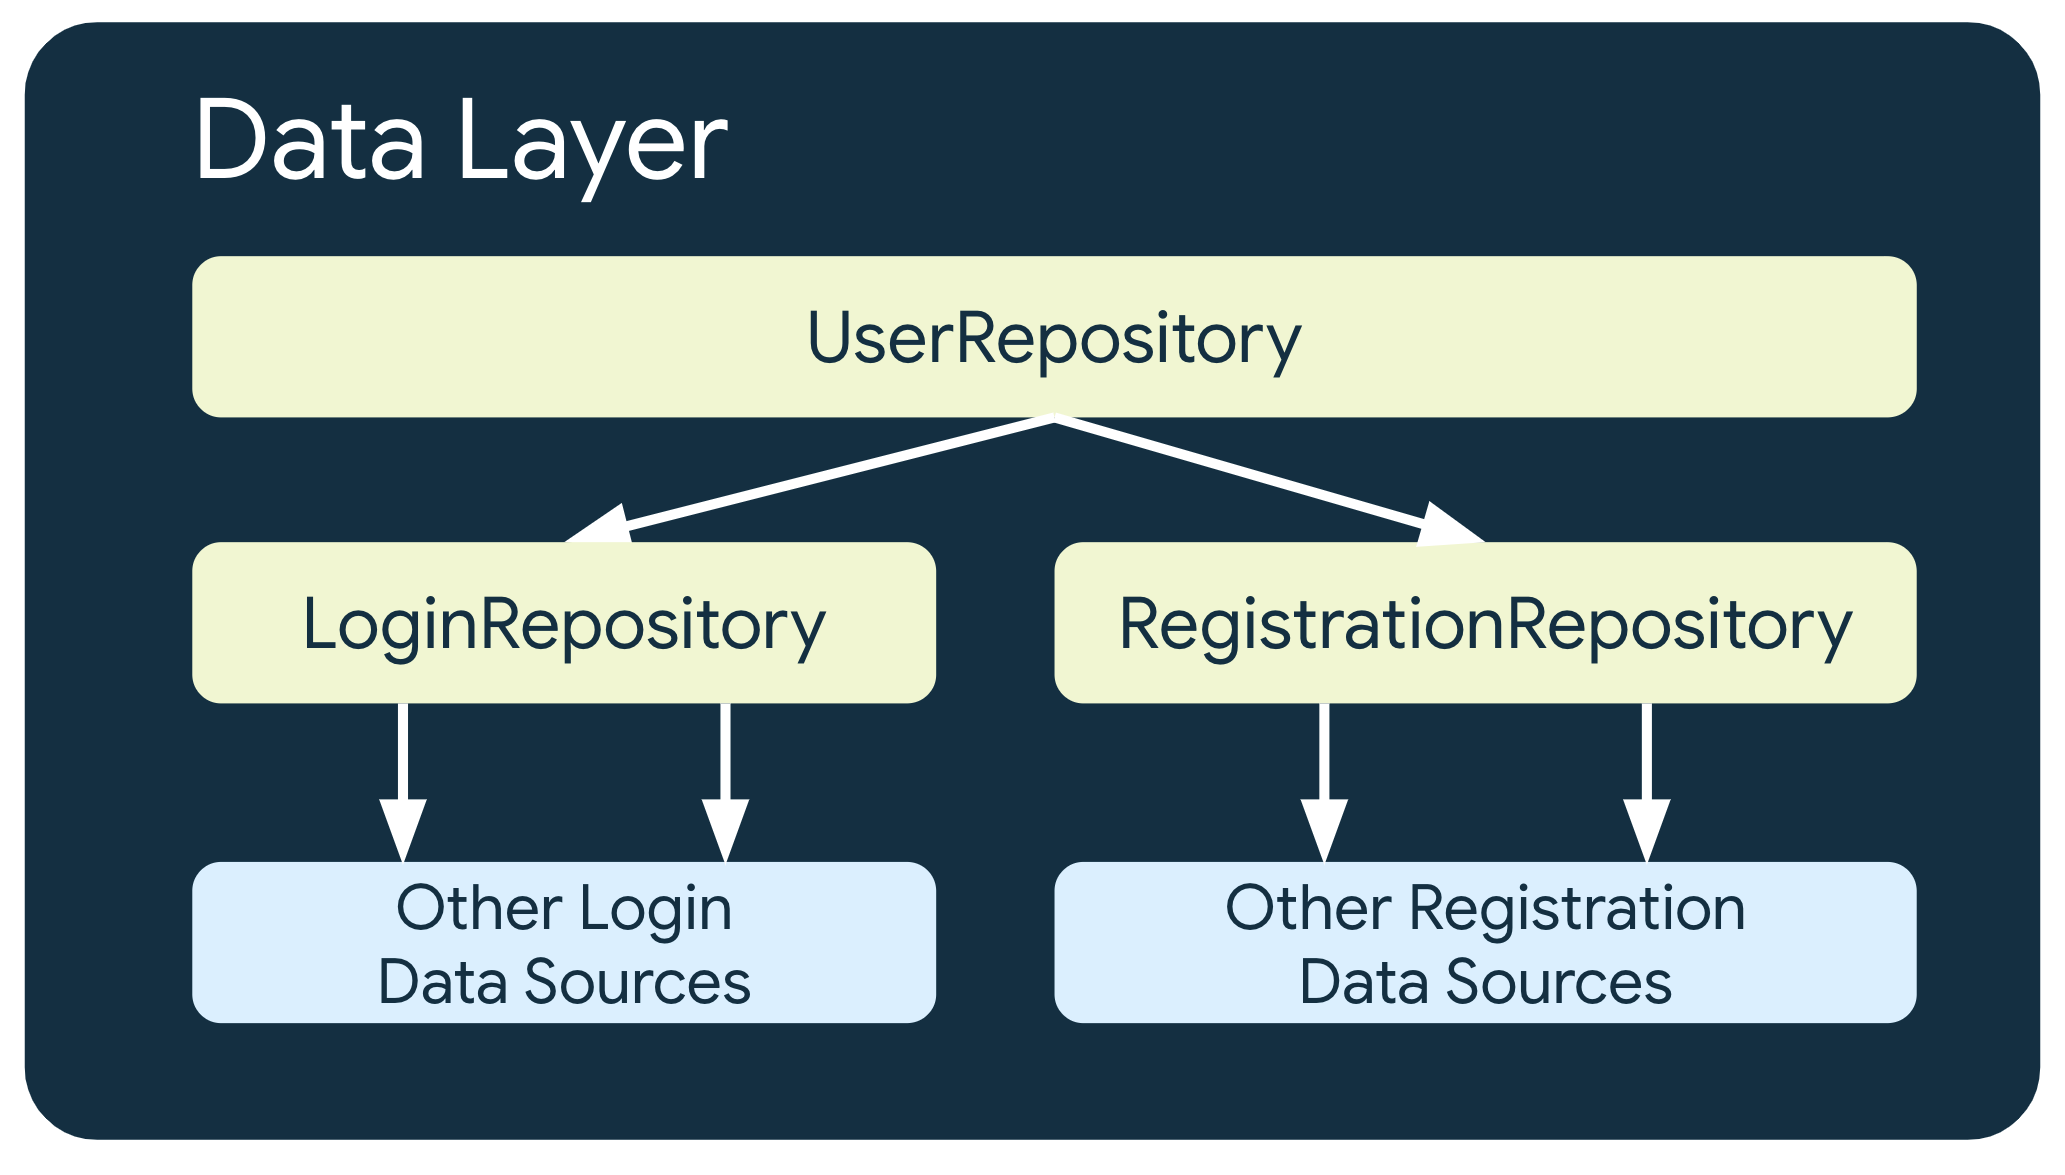 في هذا المثال، يعتمد UserRepository على فئتين أخريين من فئات المستودع:
    LoginRepository, الذي يعتمد على مصادر أخرى لبيانات تسجيل الدخول،
    وRegistrationRepository التي تعتمد على مصادر بيانات التسجيل الأخرى.